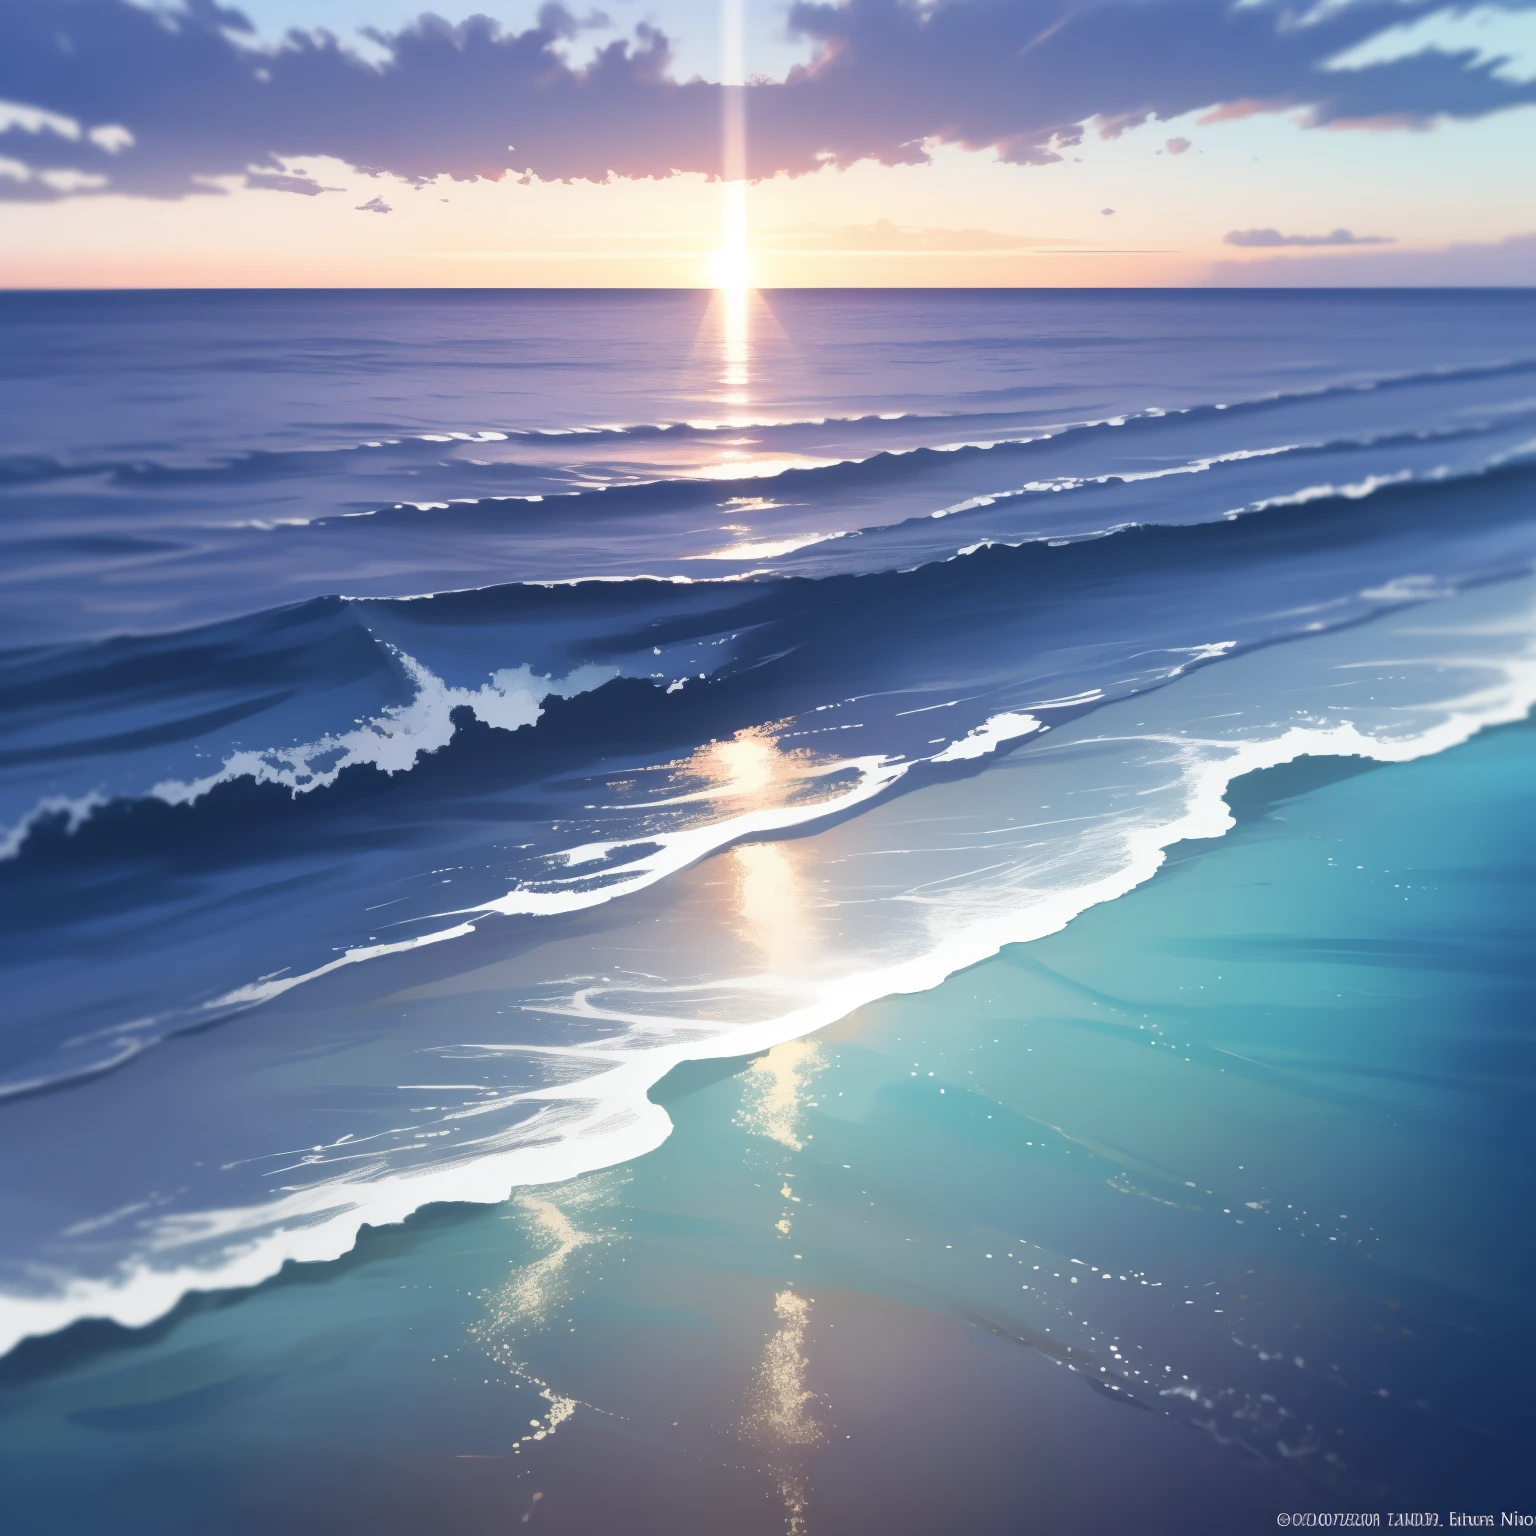 Costa Azul: Una impresionante pintura de paisaje marino con los más altos detalles y calidad de obra maestra.. La costa está adornada con vibrantes aguas azules que bañan suavemente la costa., creando un ambiente sereno y tranquilo. El sol comienza a ponerse, lanzando un cálido, Resplandor dorado sobre la escena, iluminando las olas y la arena de textura intrincada. En la distancia, se pueden ver las siluetas de los veleros deslizándose sin esfuerzo por el agua, sus velas captando la suave luz del sol poniente. El fondo está lleno de profundidad de campos., mostrando la exuberante vegetación y las colinas que se elevan desde la costa. 